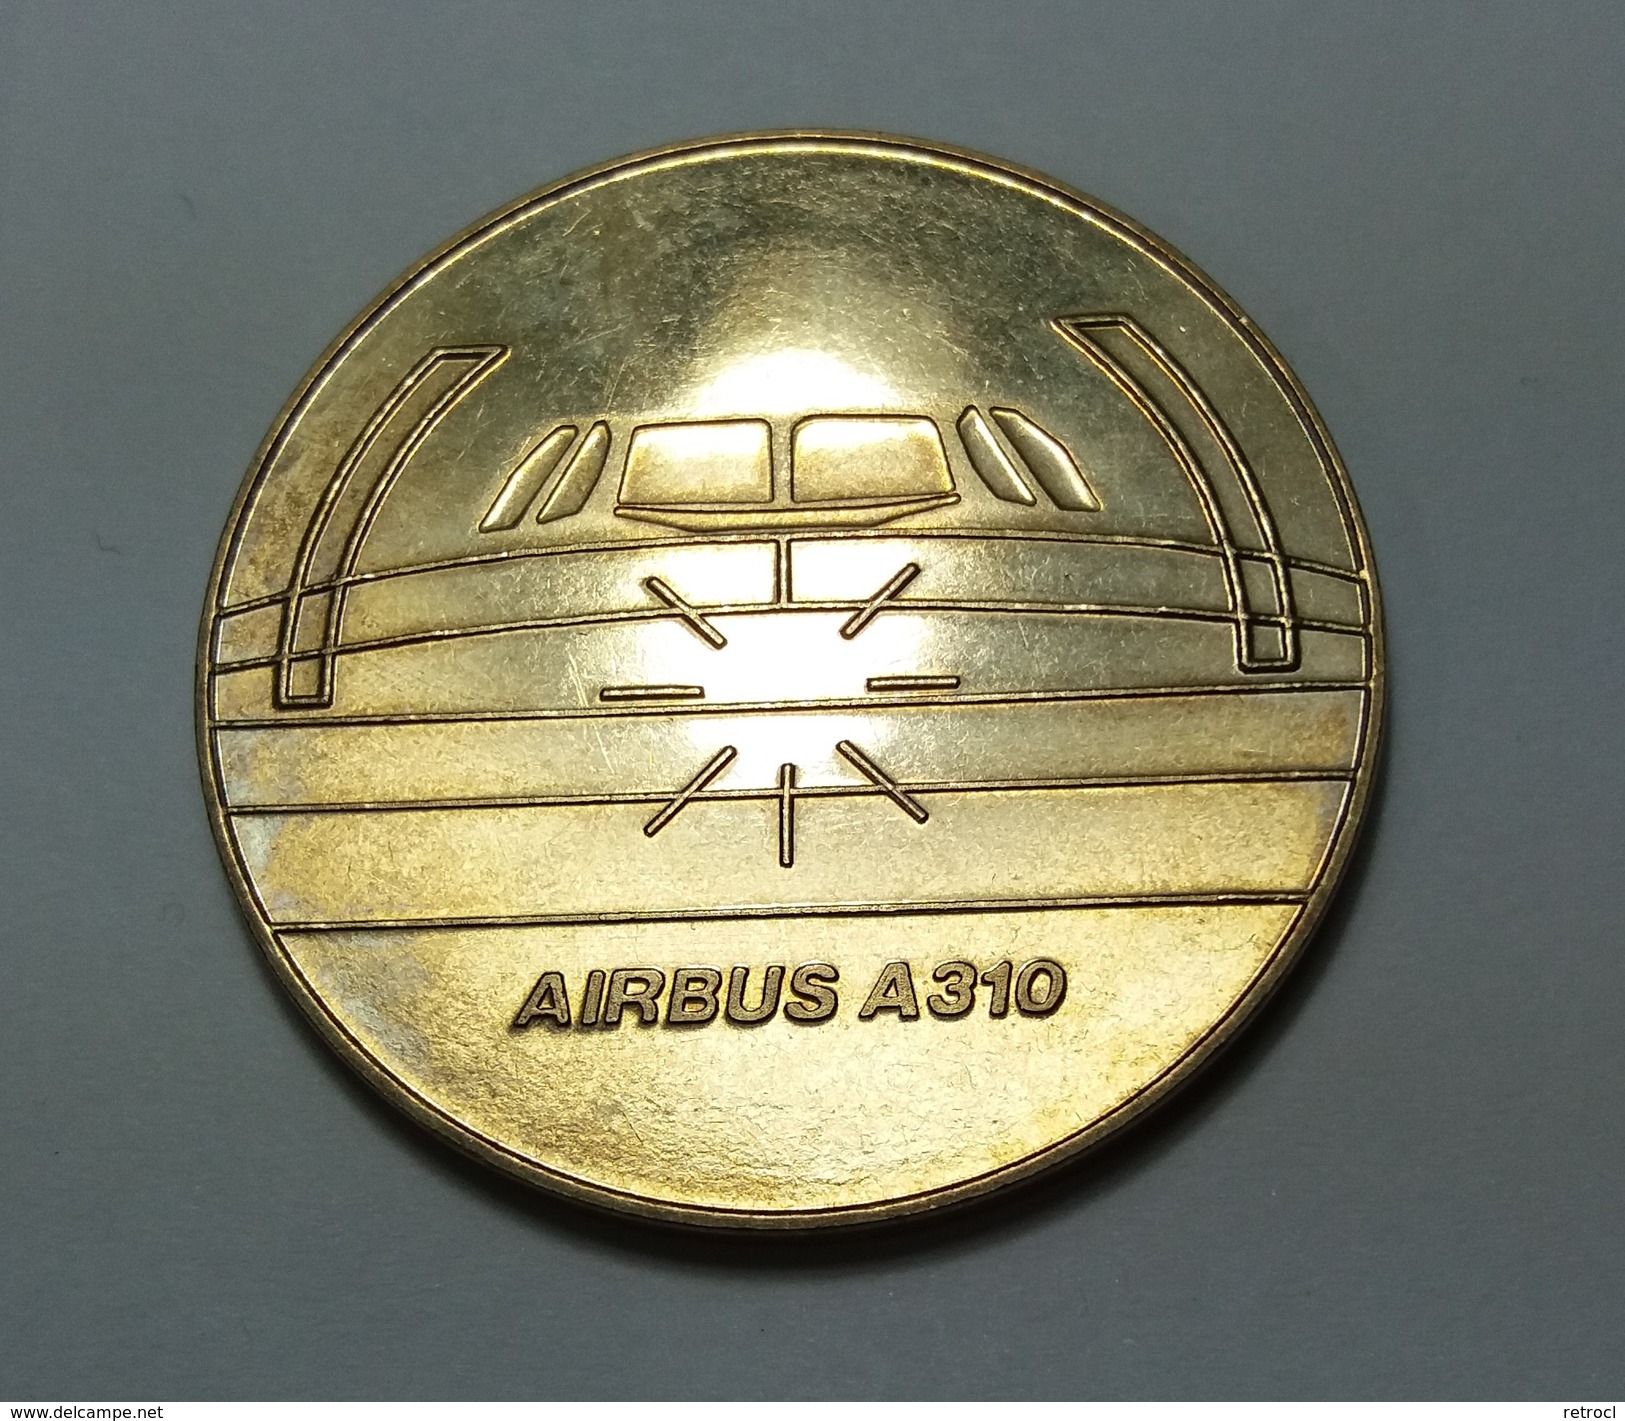 Airbus A310 - Mit Dem Condor Airbus A310 - Zur Erinnerung An Ihren Flug - Profesionales/De Sociedad